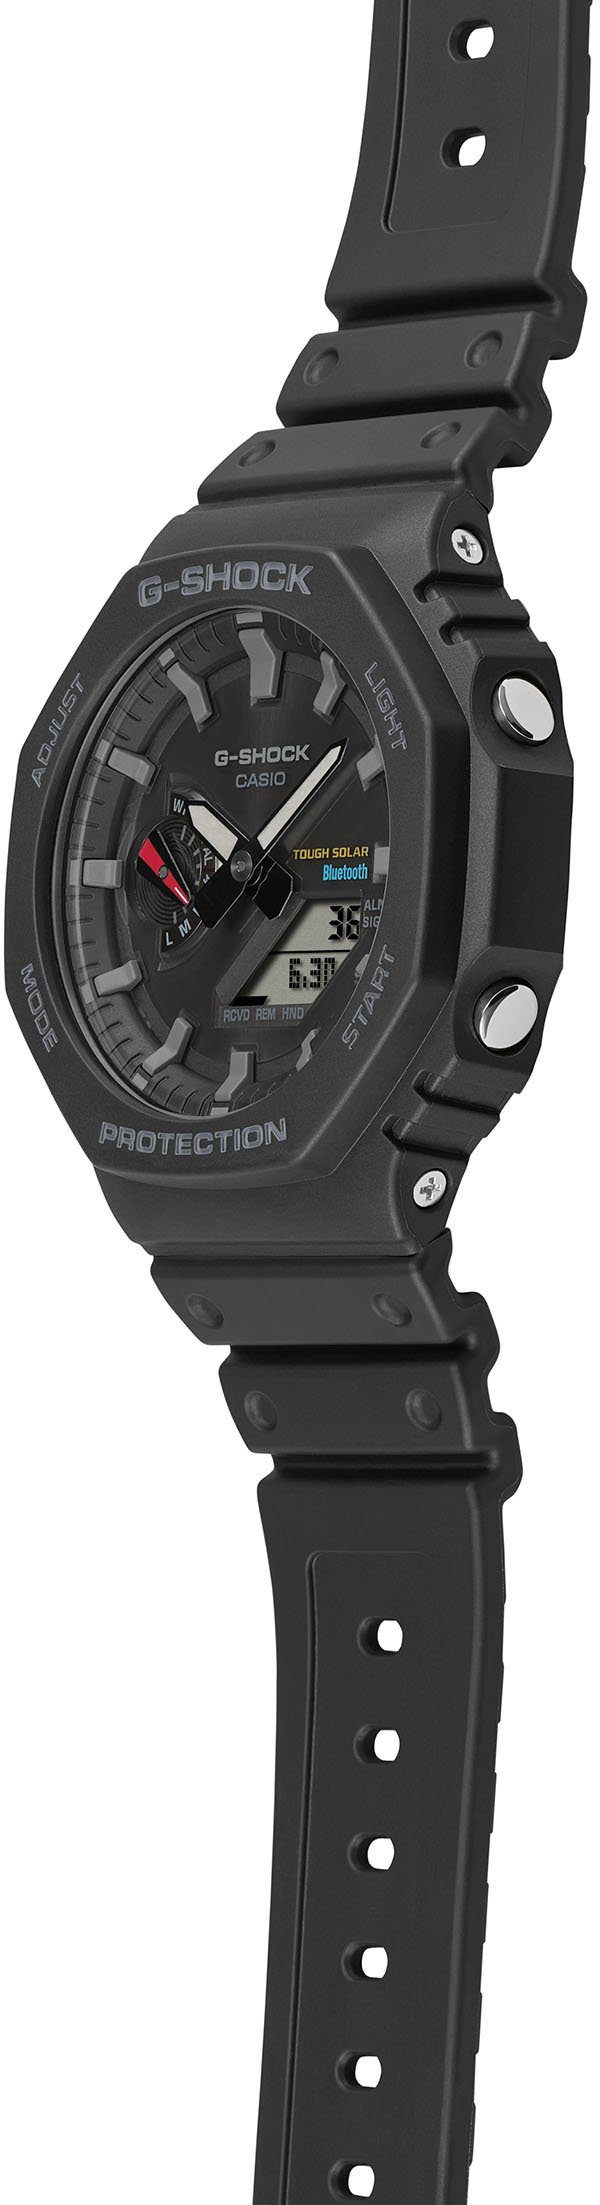 GA-B2100-1AER Smartwatch, CASIO G-SHOCK Solar